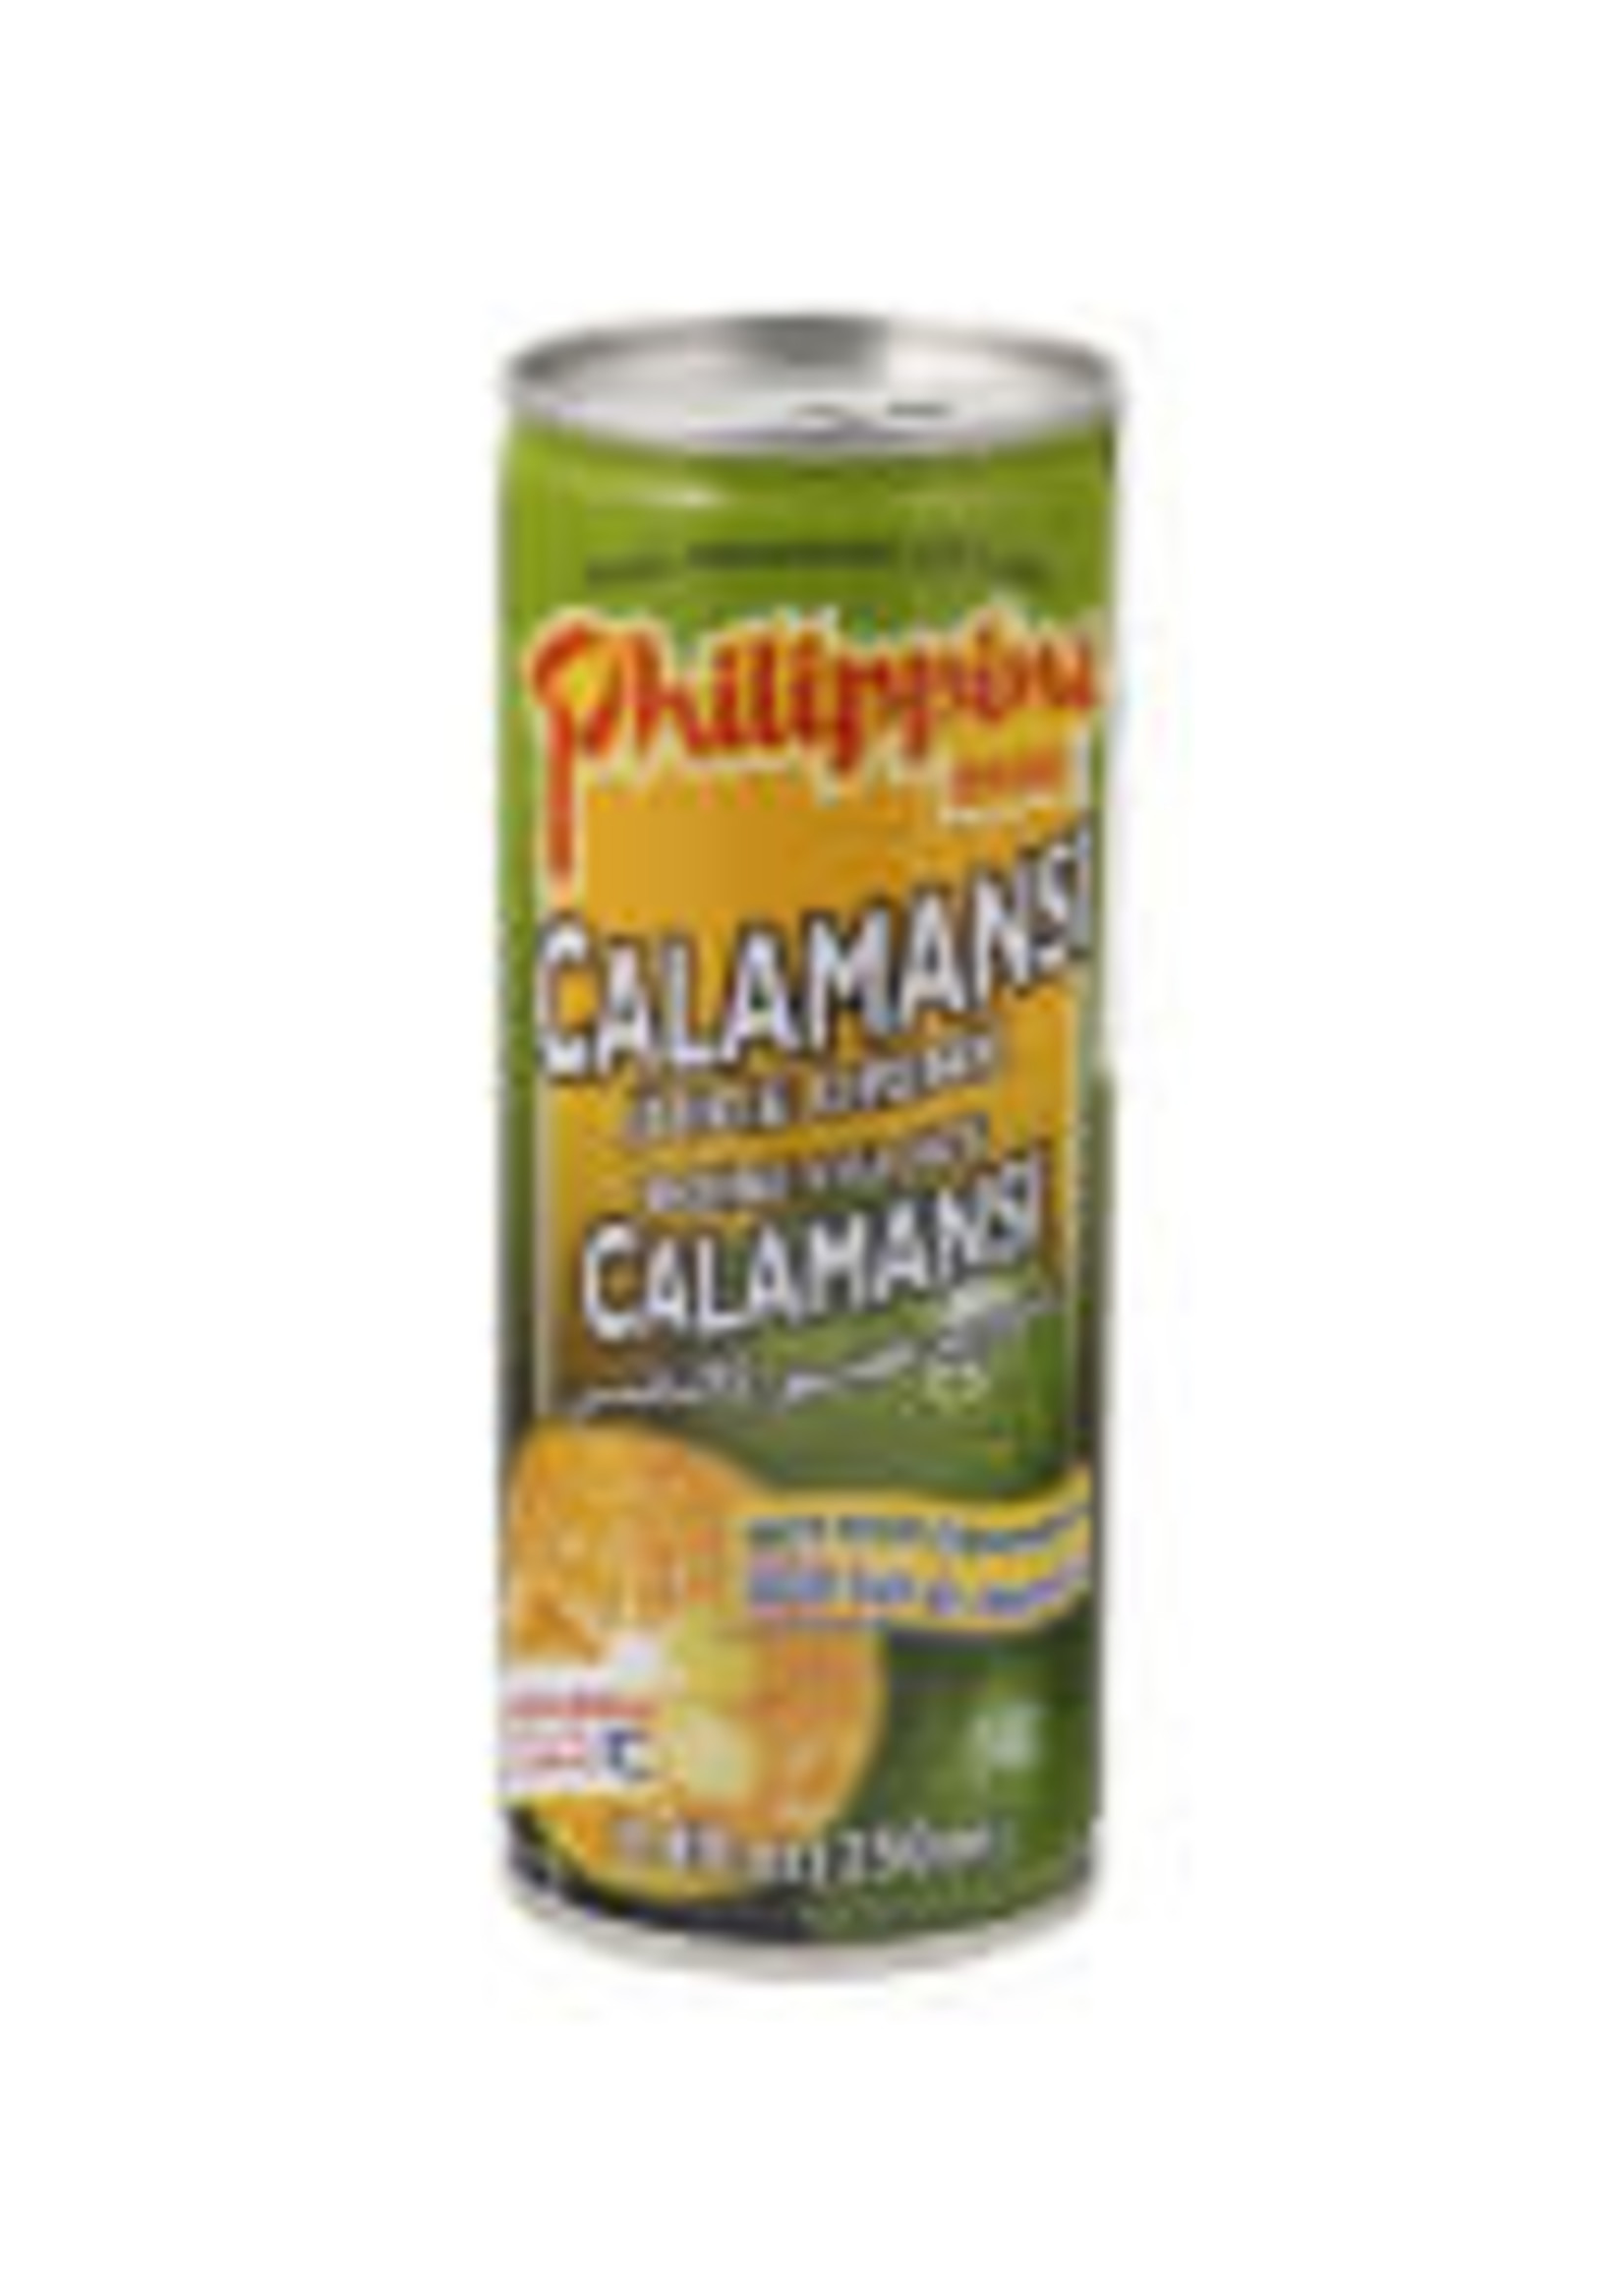 Philippine Brand Philippine Brand Calamansi Juice 250 ML